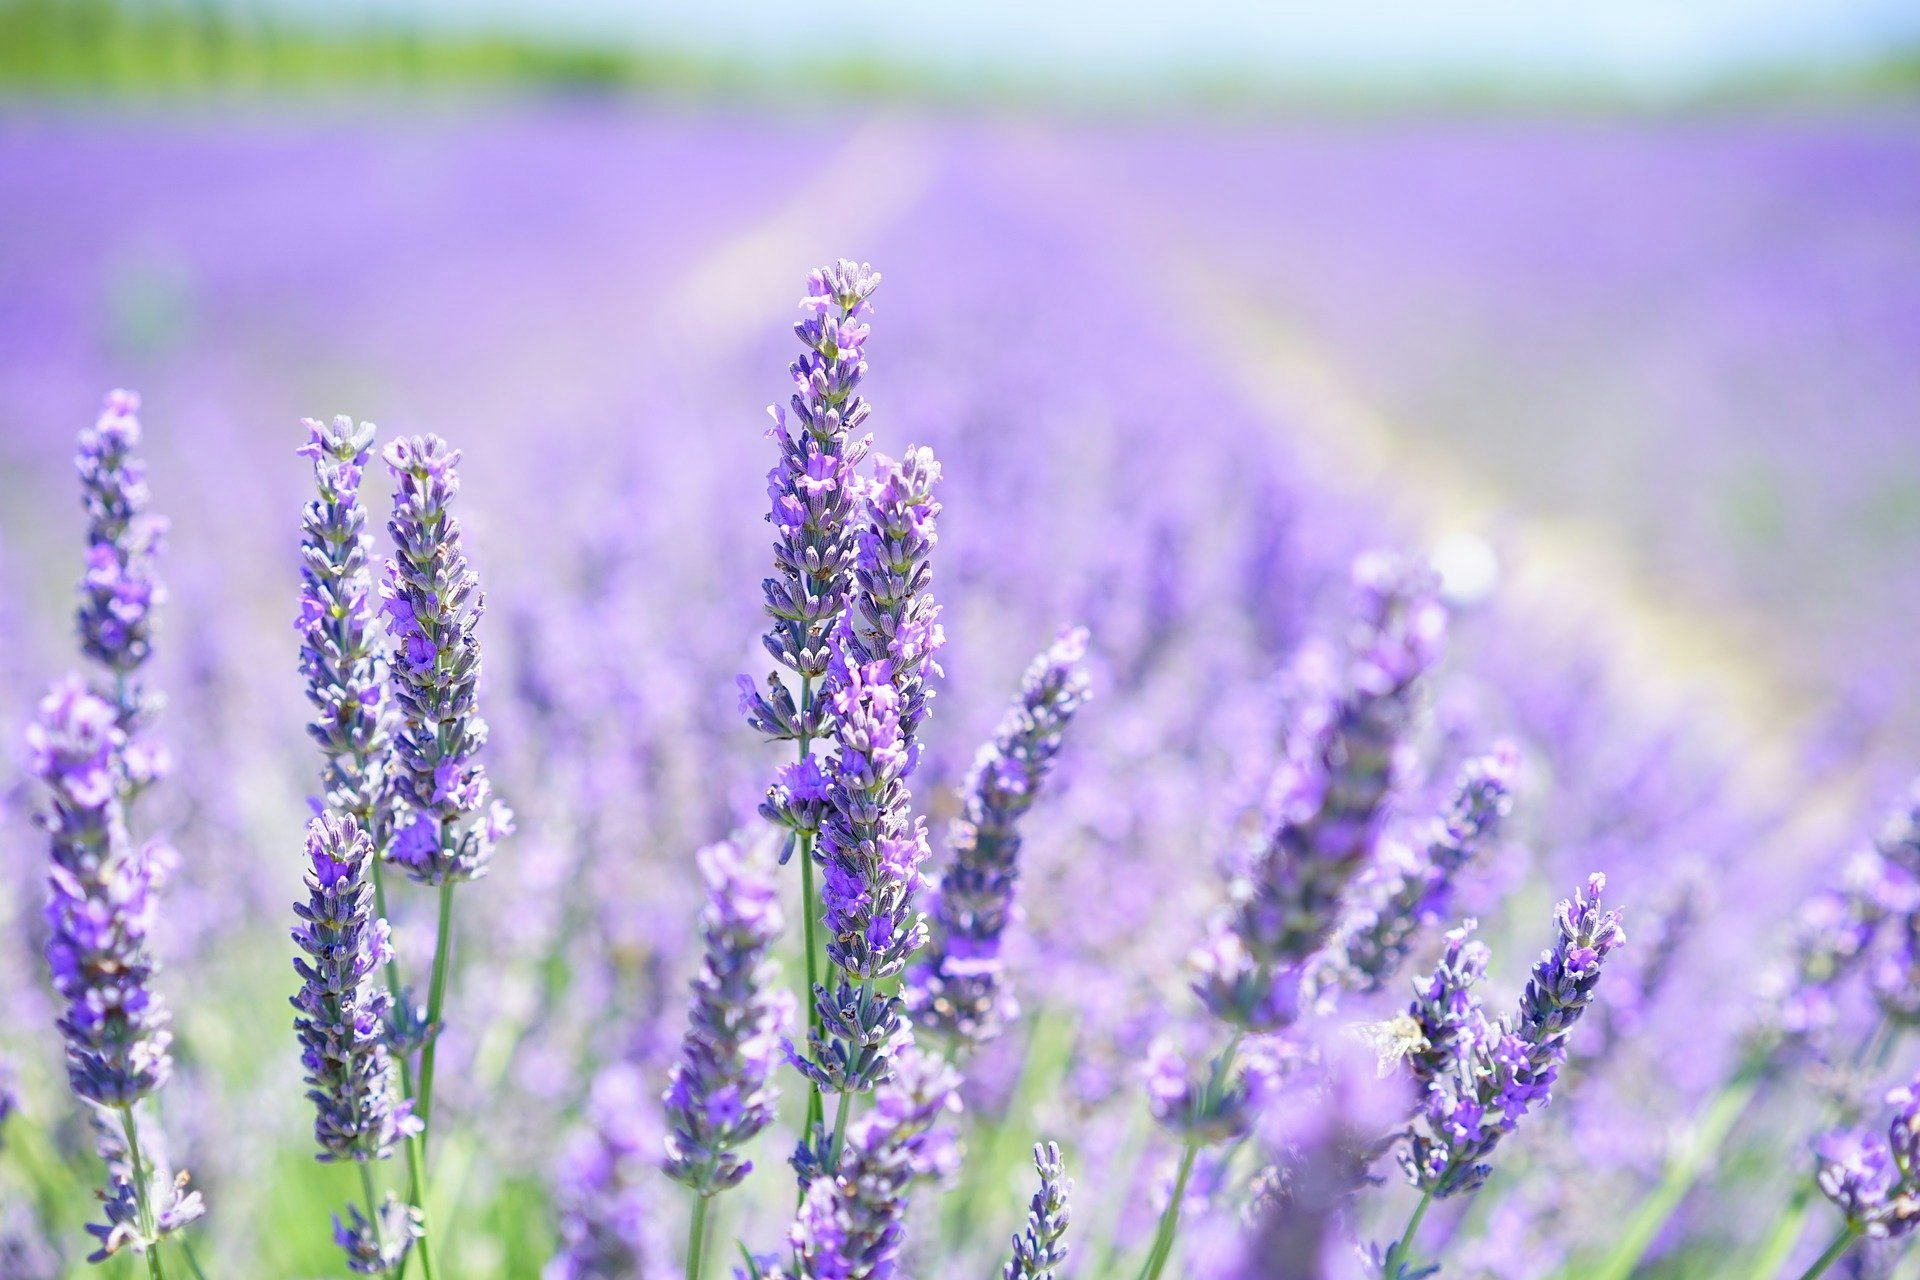 Let's make lavender oil